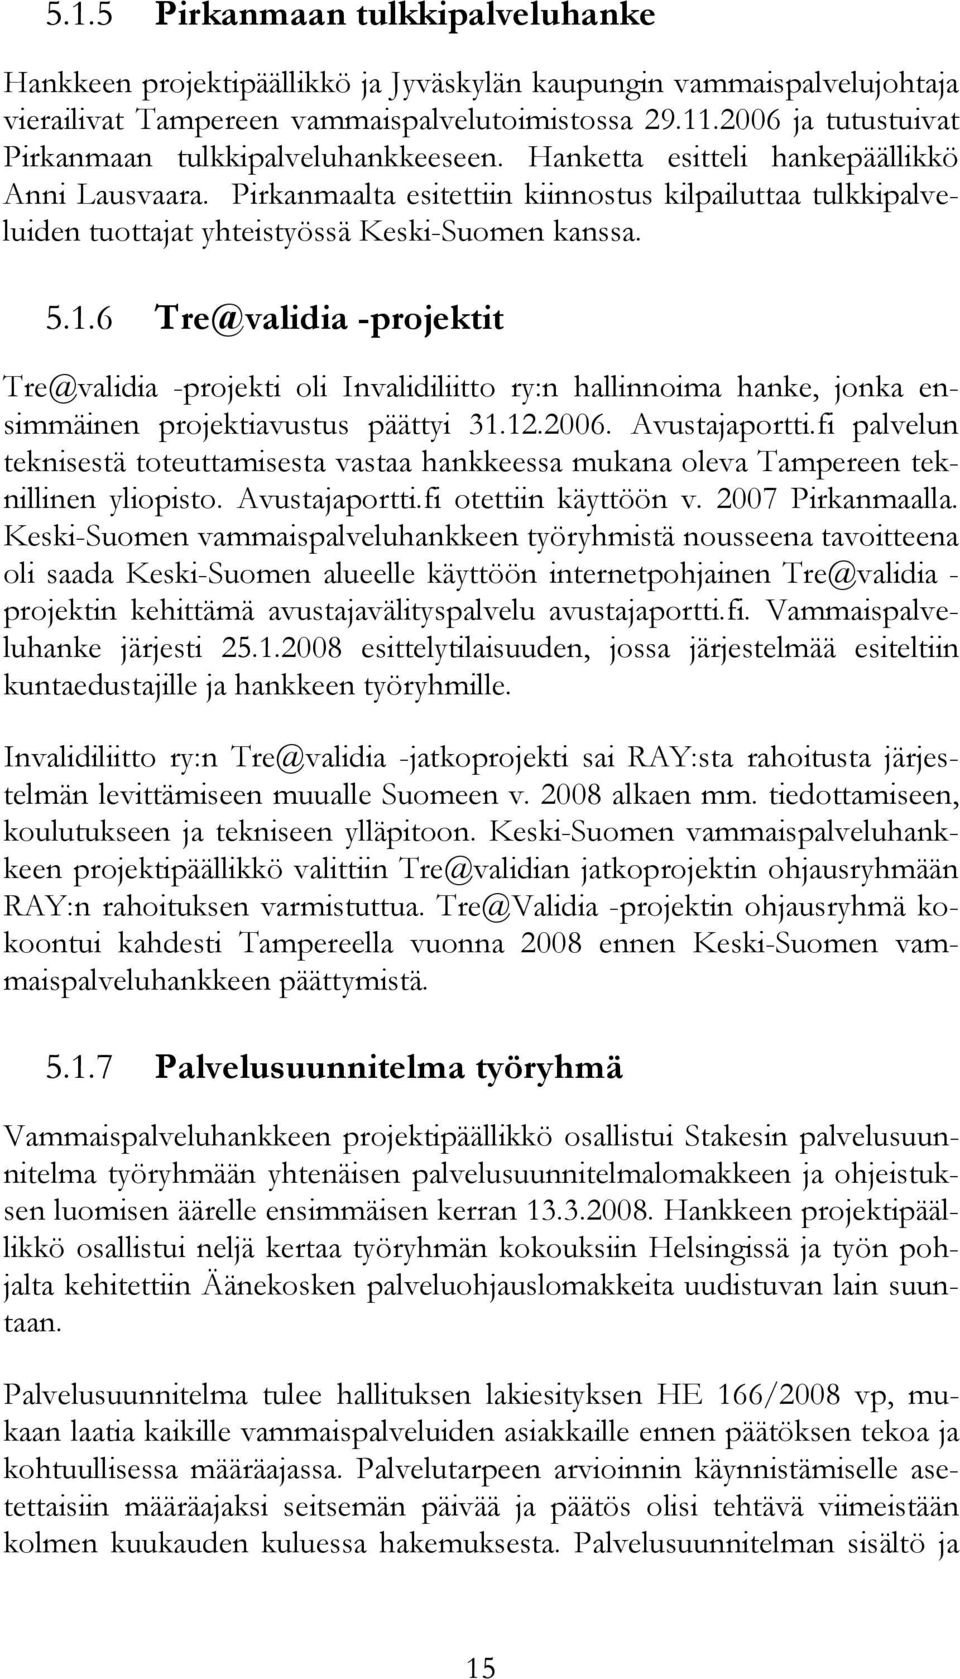 Pirkanmaalta esitettiin kiinnostus kilpailuttaa tulkkipalveluiden tuottajat yhteistyössä Keski-Suomen kanssa. 5.1.